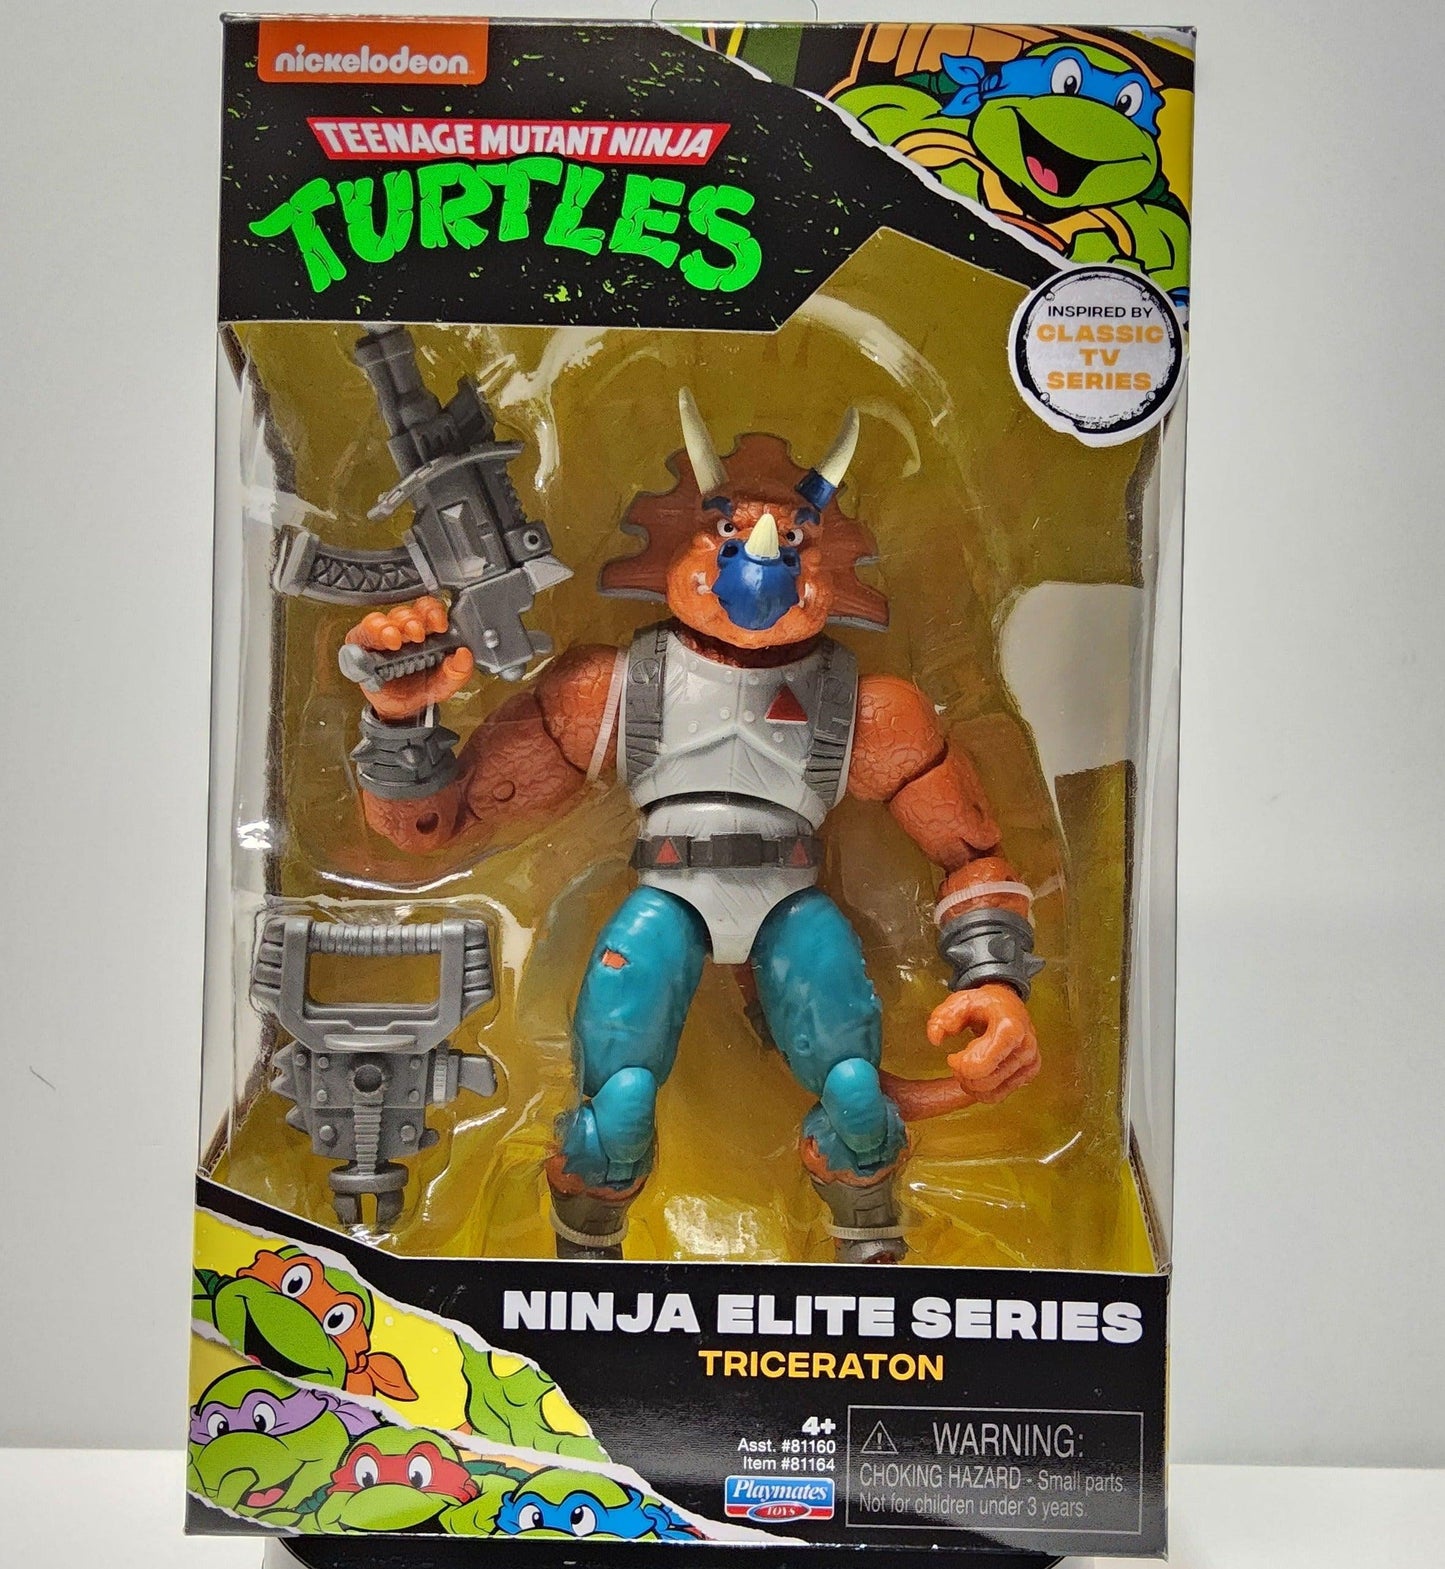 Teenage Mutant Ninja Turtles Ninja Elite Series Triceraton Action Figure - Logan's Toy Chest